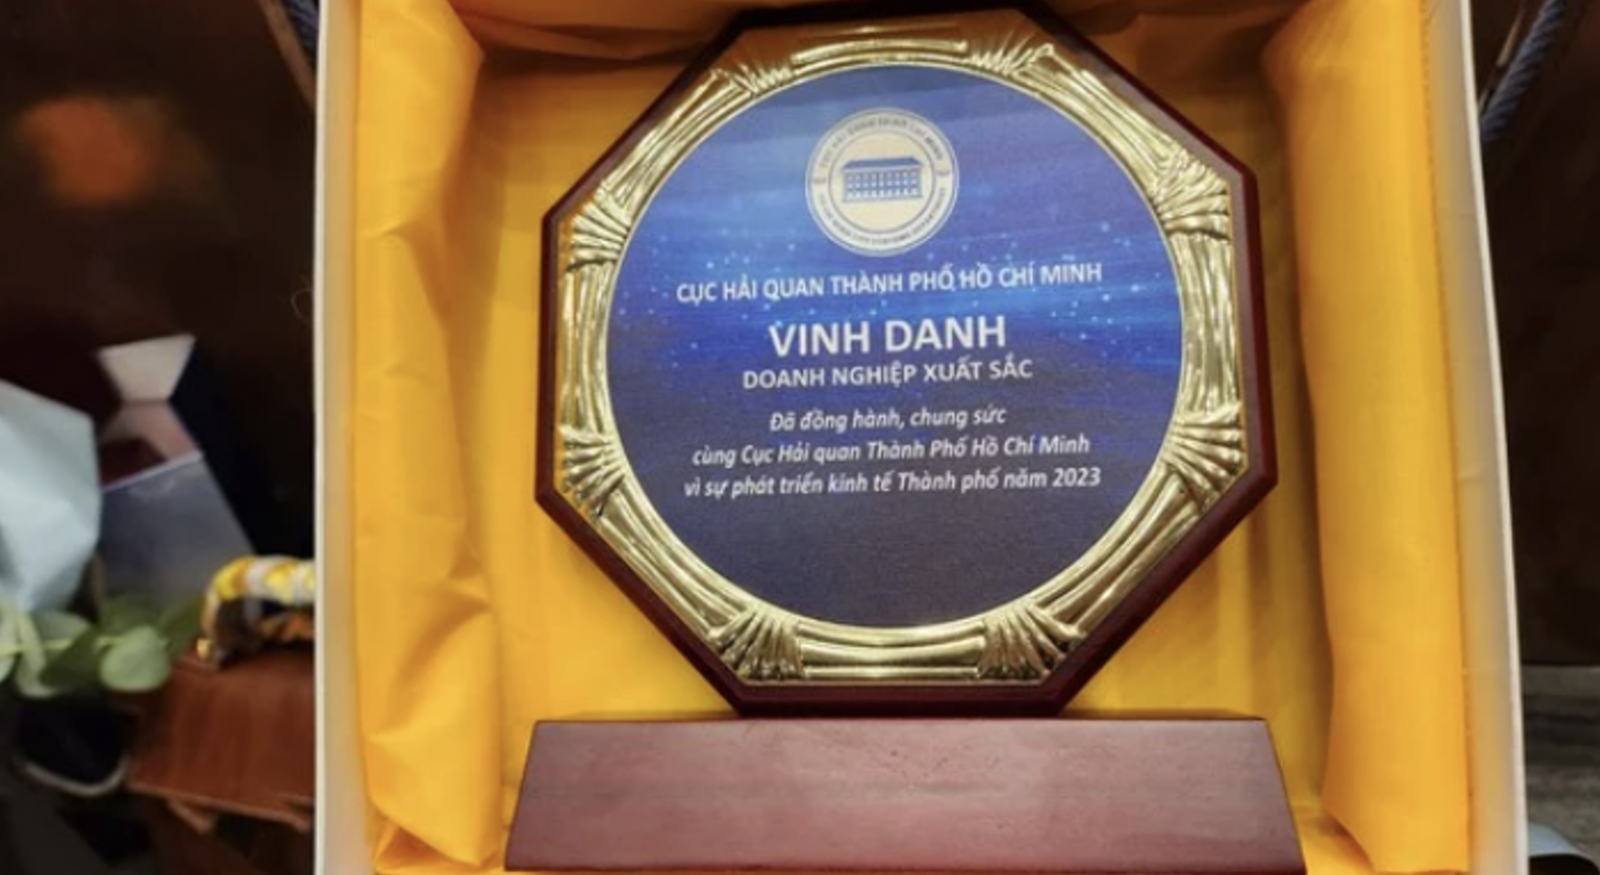 Suntory PepsiCo Việt Nam nhận kỷ niệm chương vinh danh vì những đóng góp